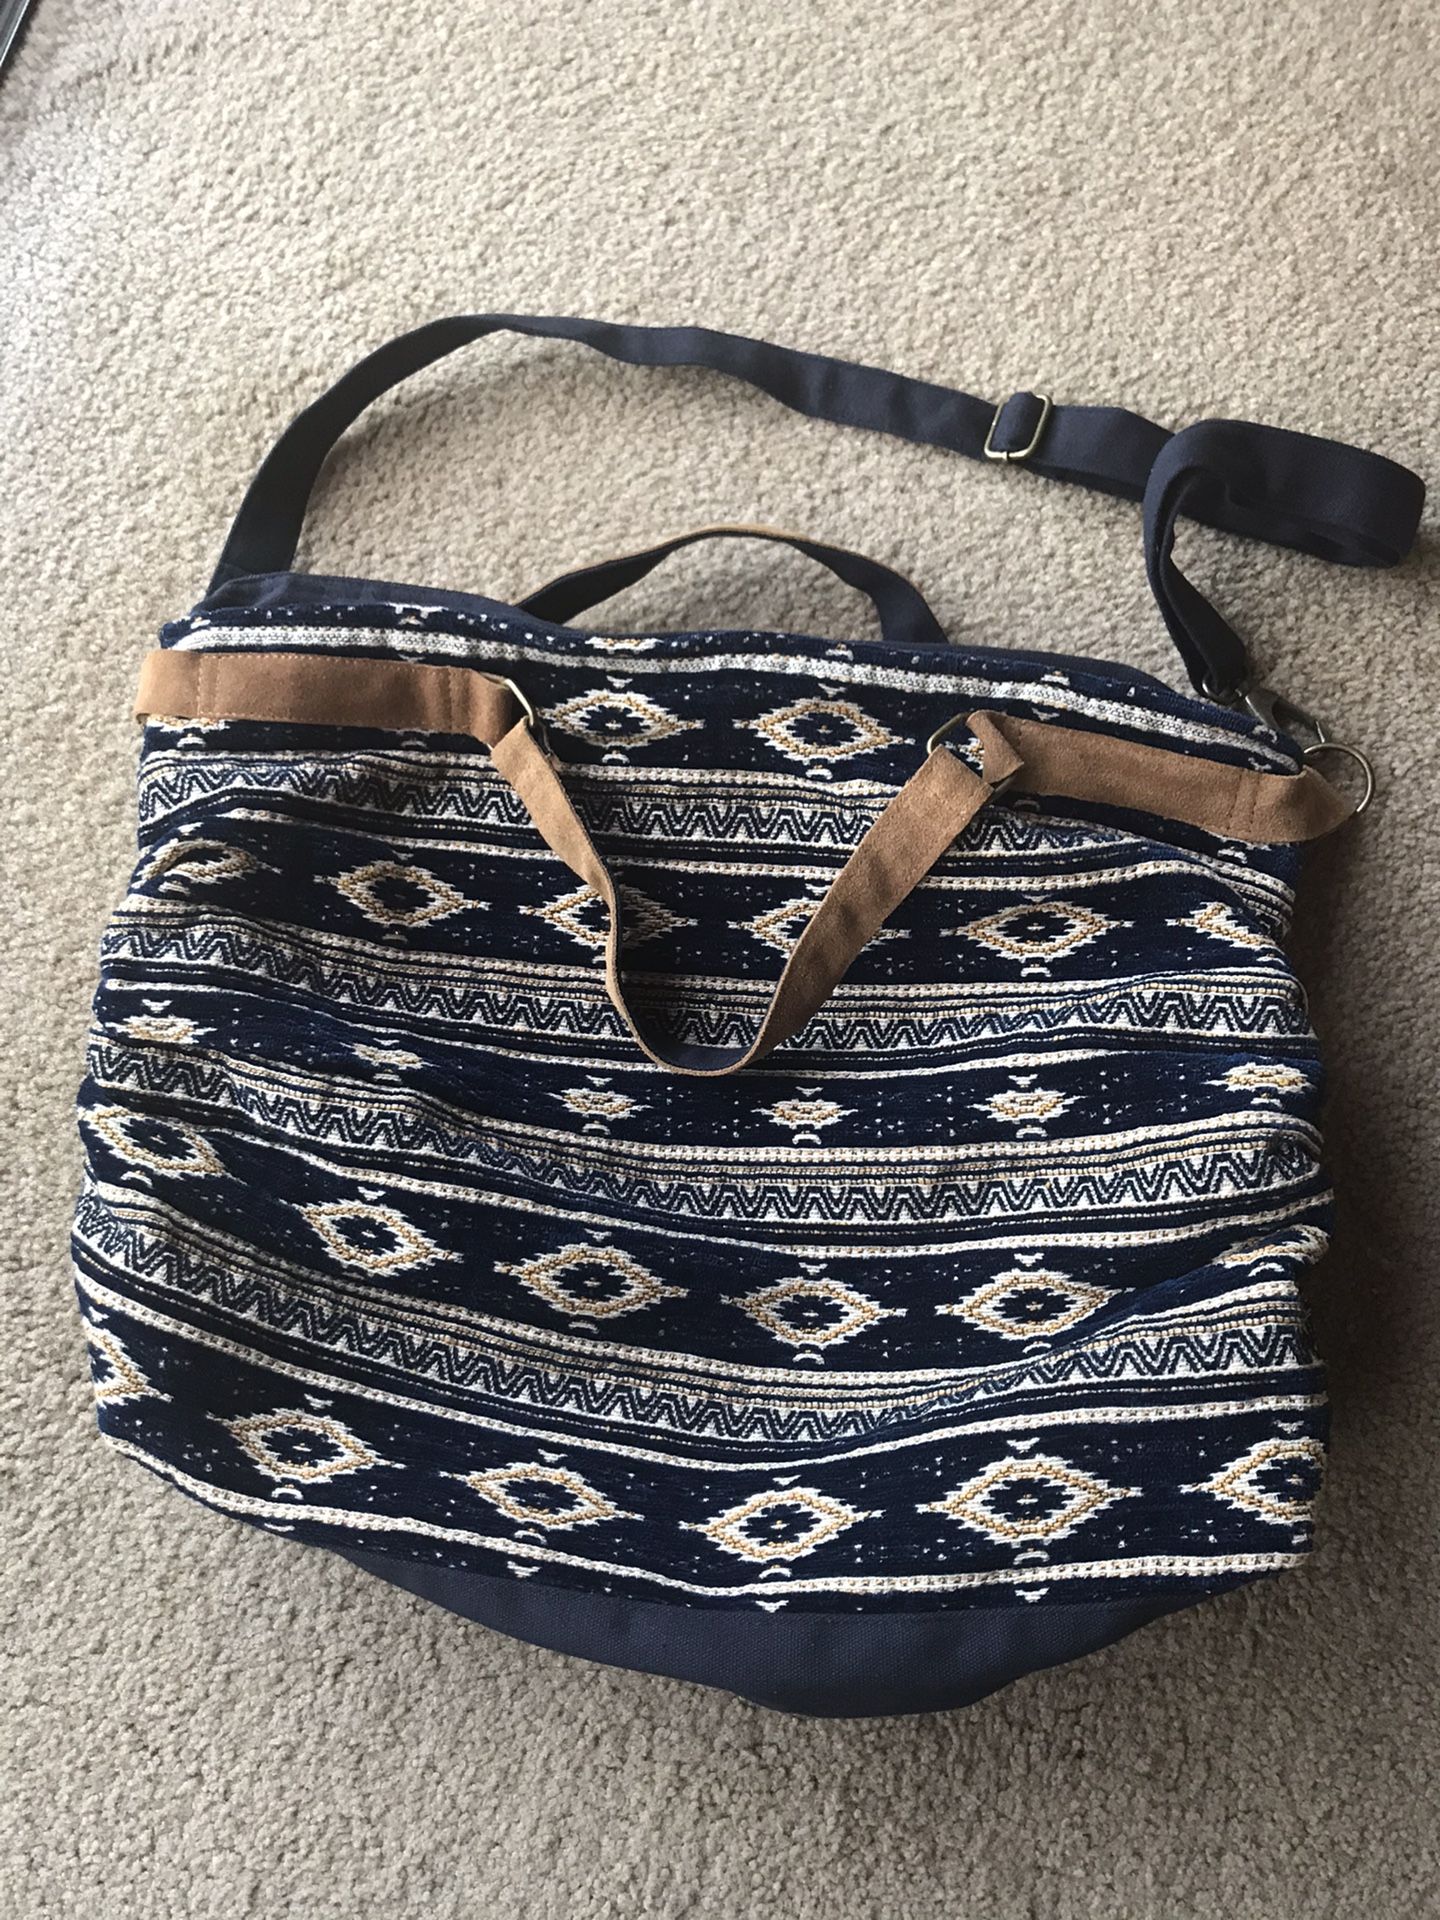 Cute BoHo style bag